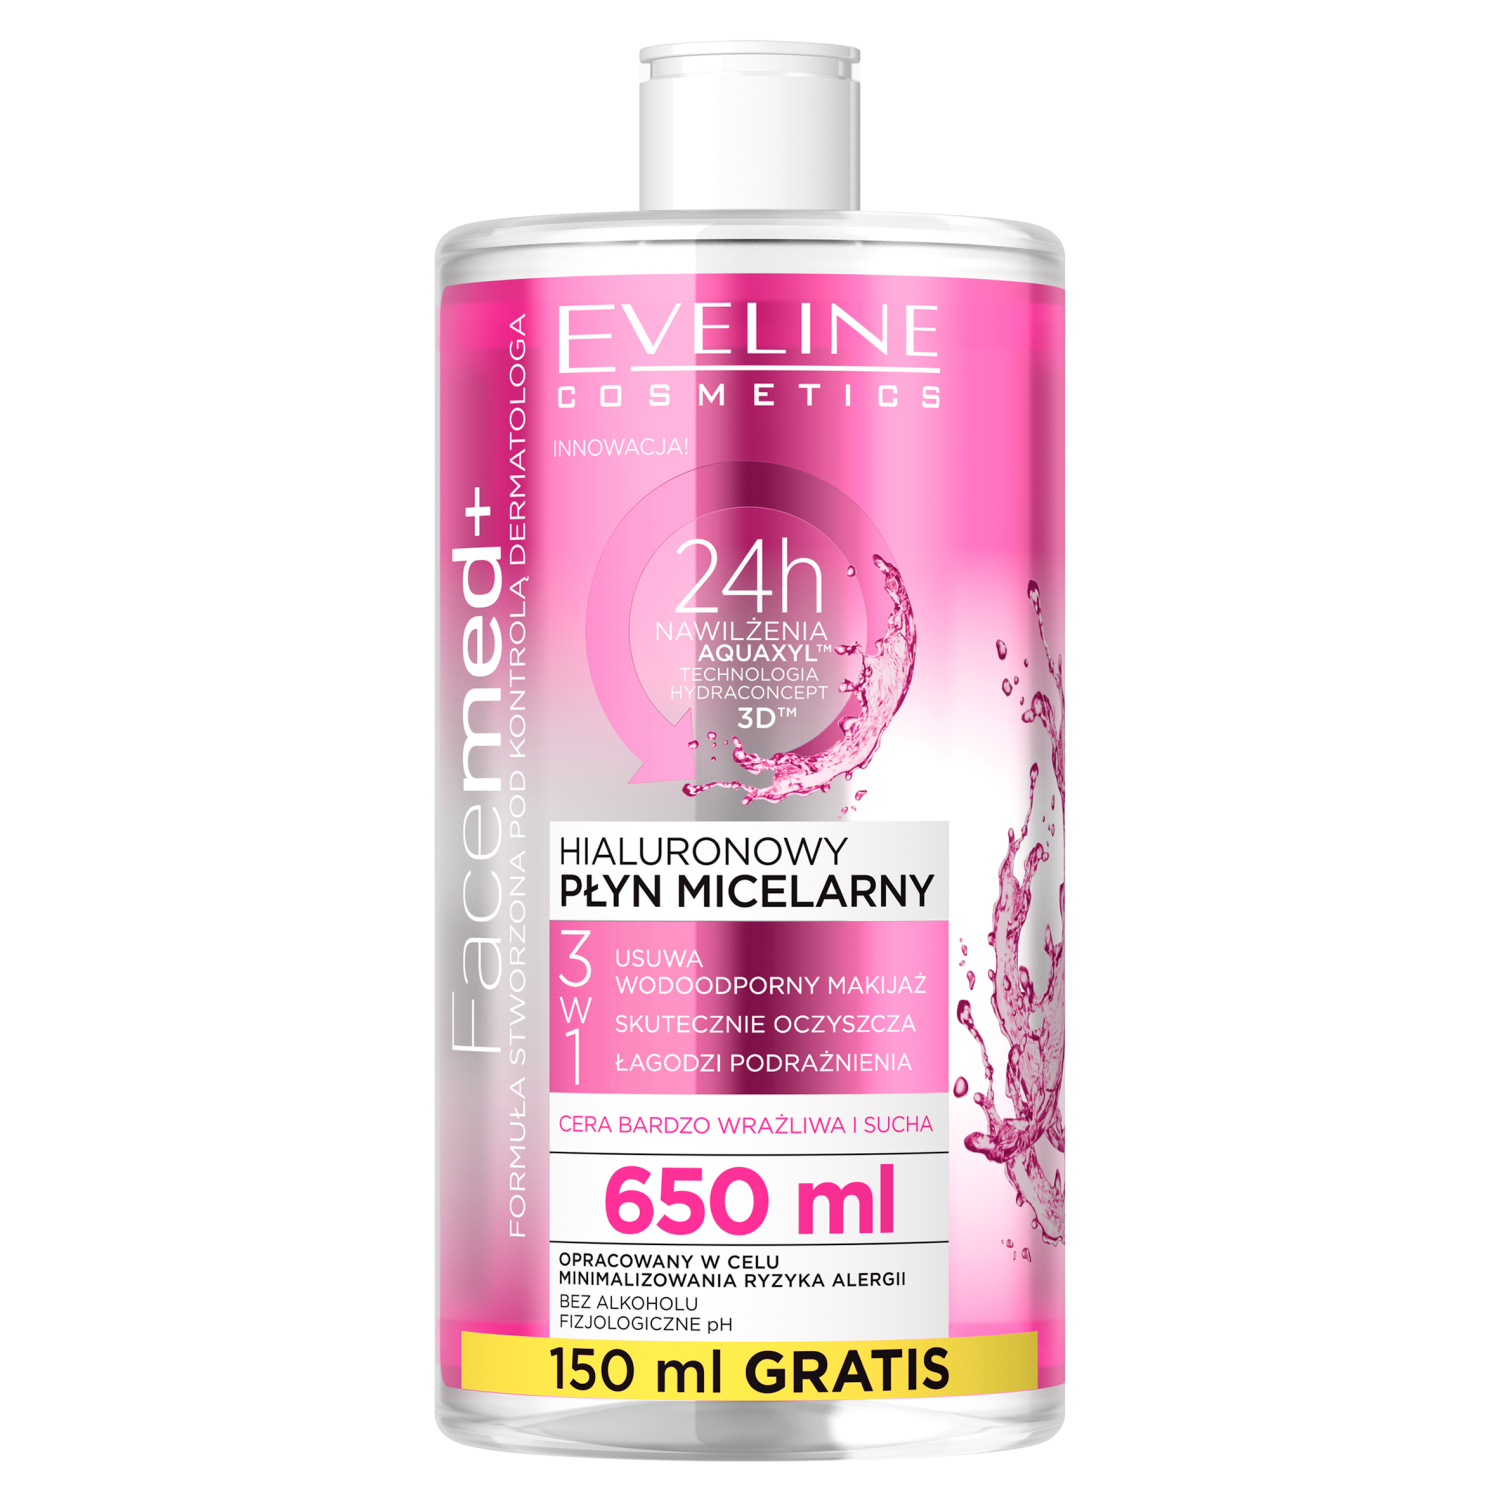 Eveline Cosmetics Facemed гиалуроновая мицеллярная вода 3в1 для лица, 650 мл